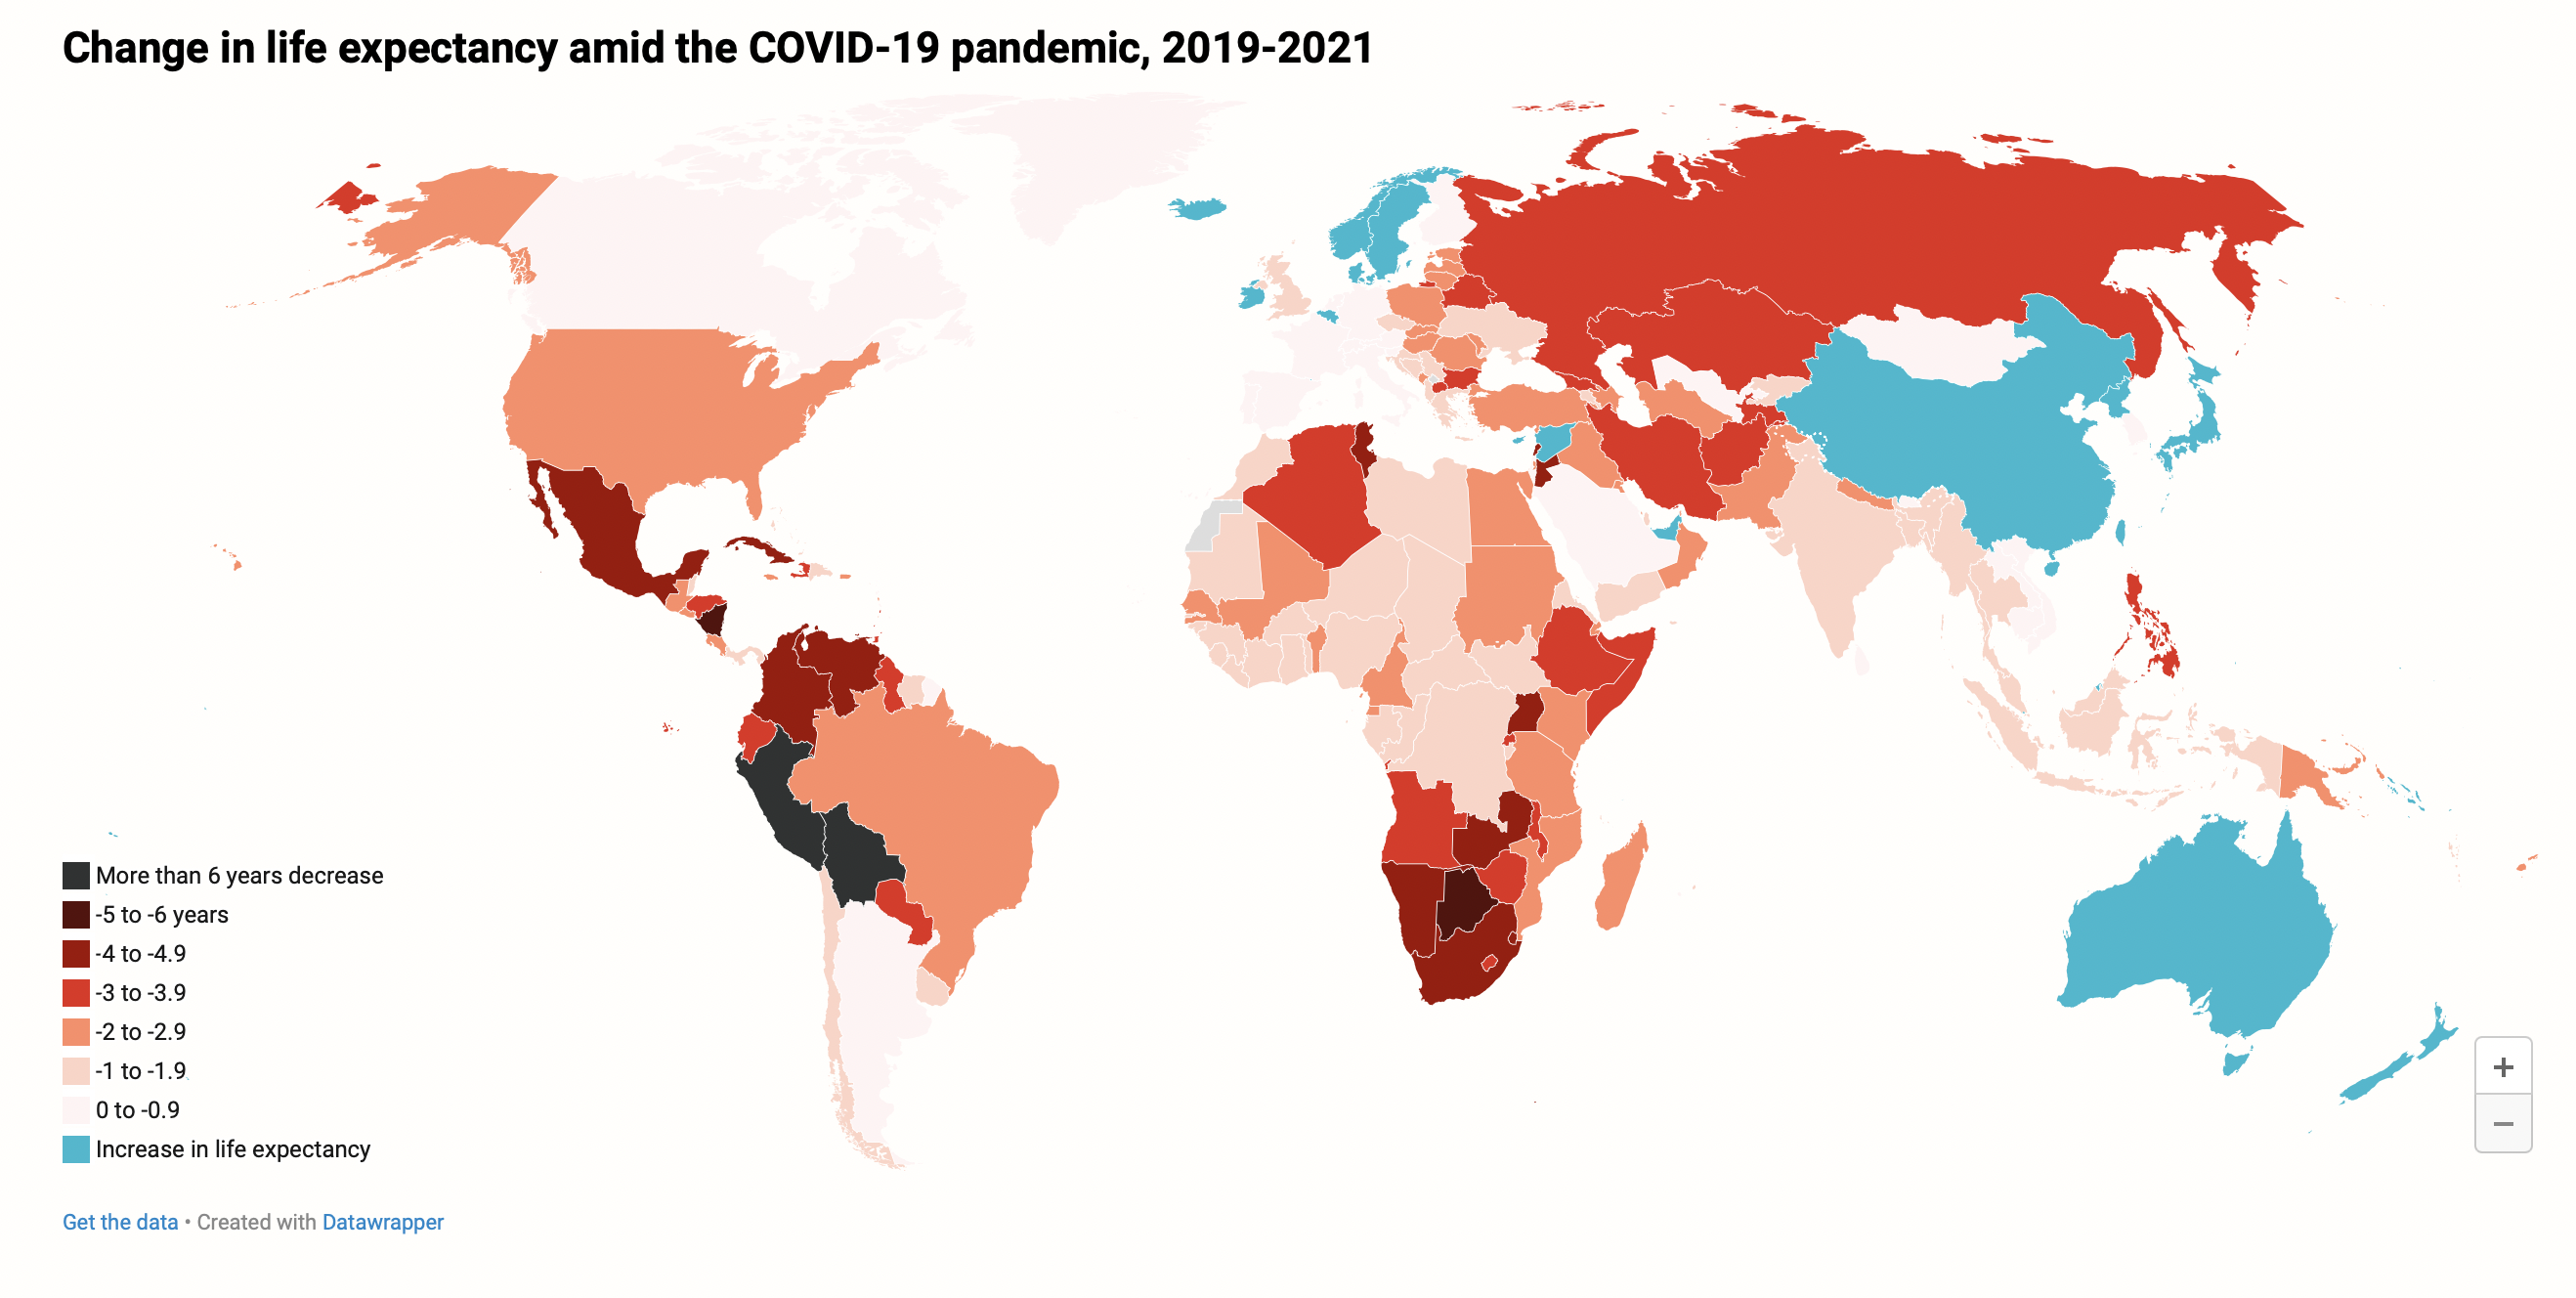 el-covid-19-redujo-la-esperanza-de-vida-en-el-mundo-senala-estudio-mapa